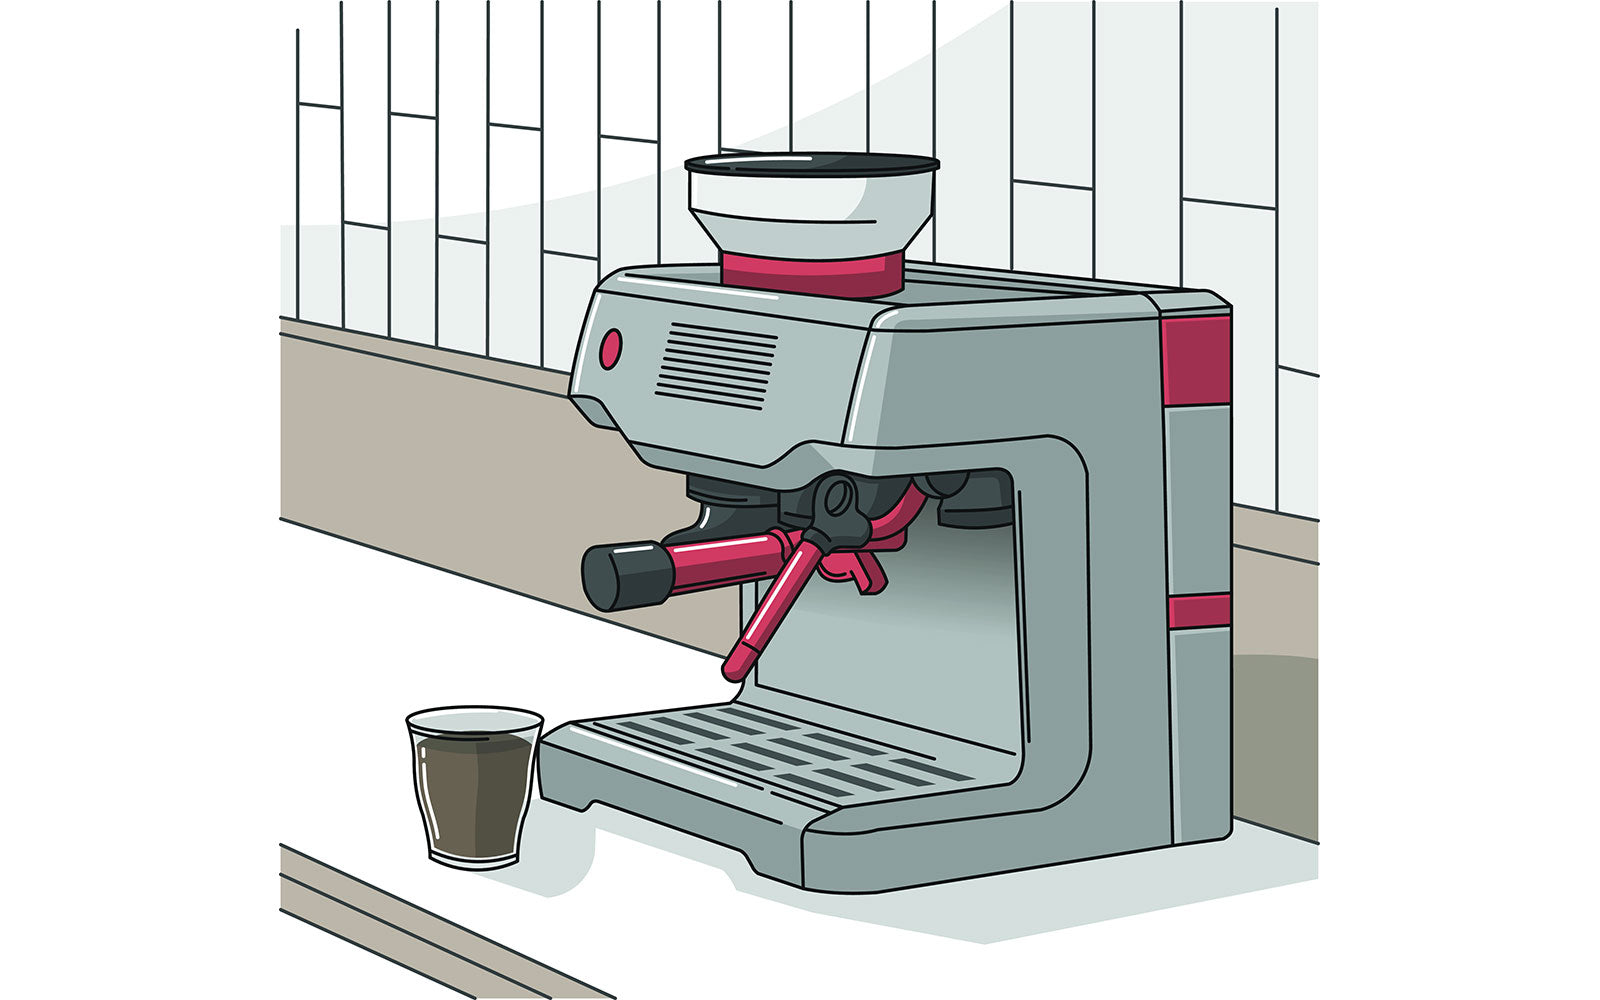 How to use a coffee machine like a pro